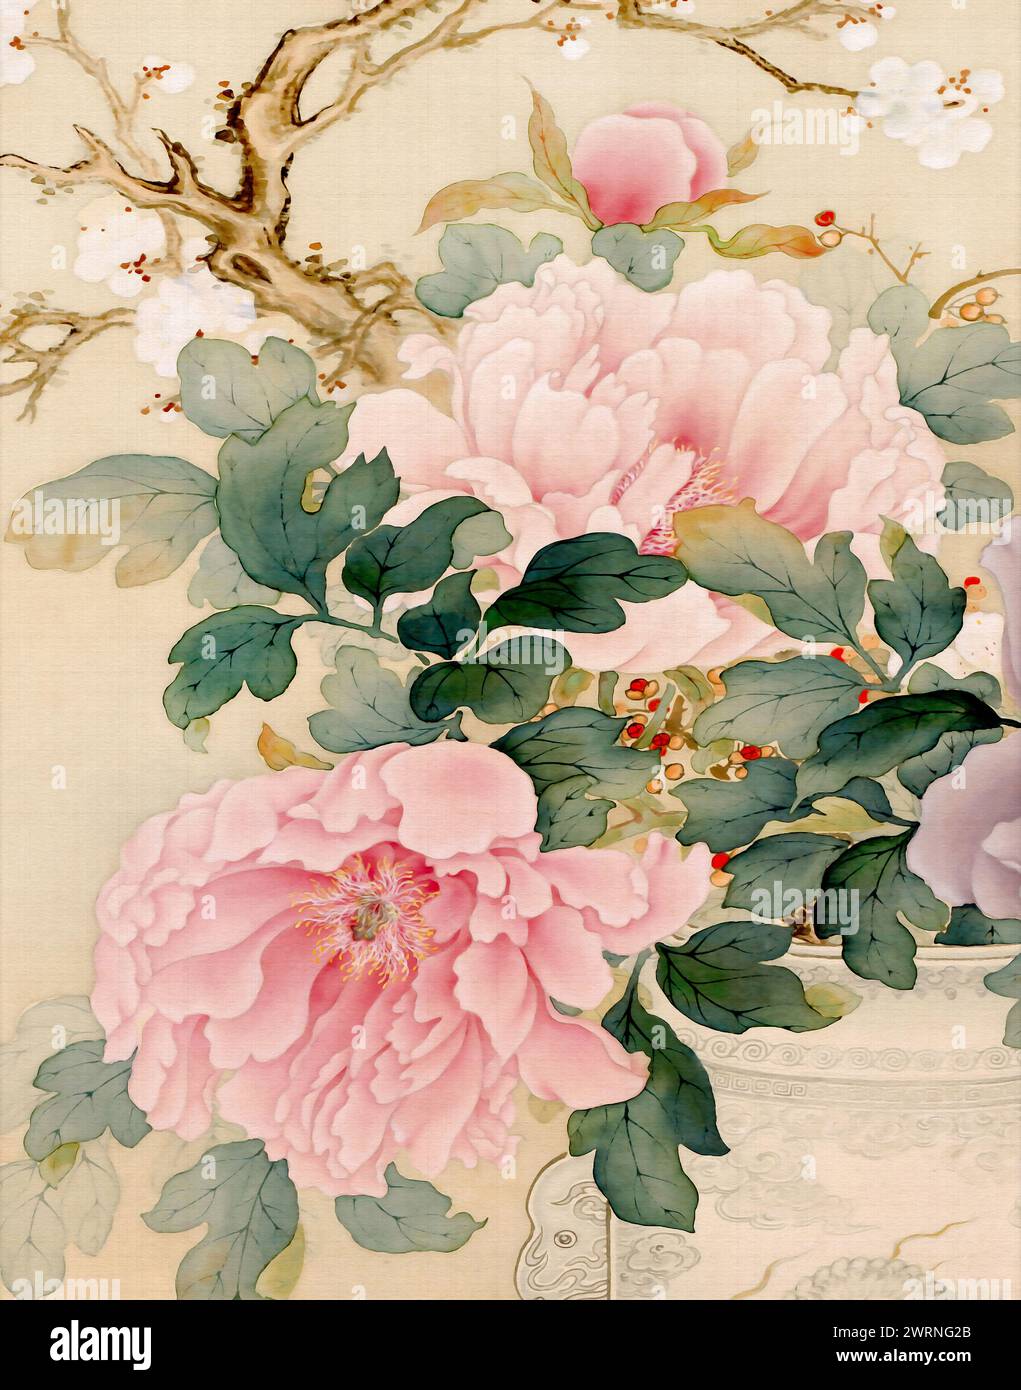 Motif floral oriental exquis. C'est une illustration numérique réalisée dans des tons pastel doux, avec un fond textile texturé, le tout dans l'élégance Banque D'Images